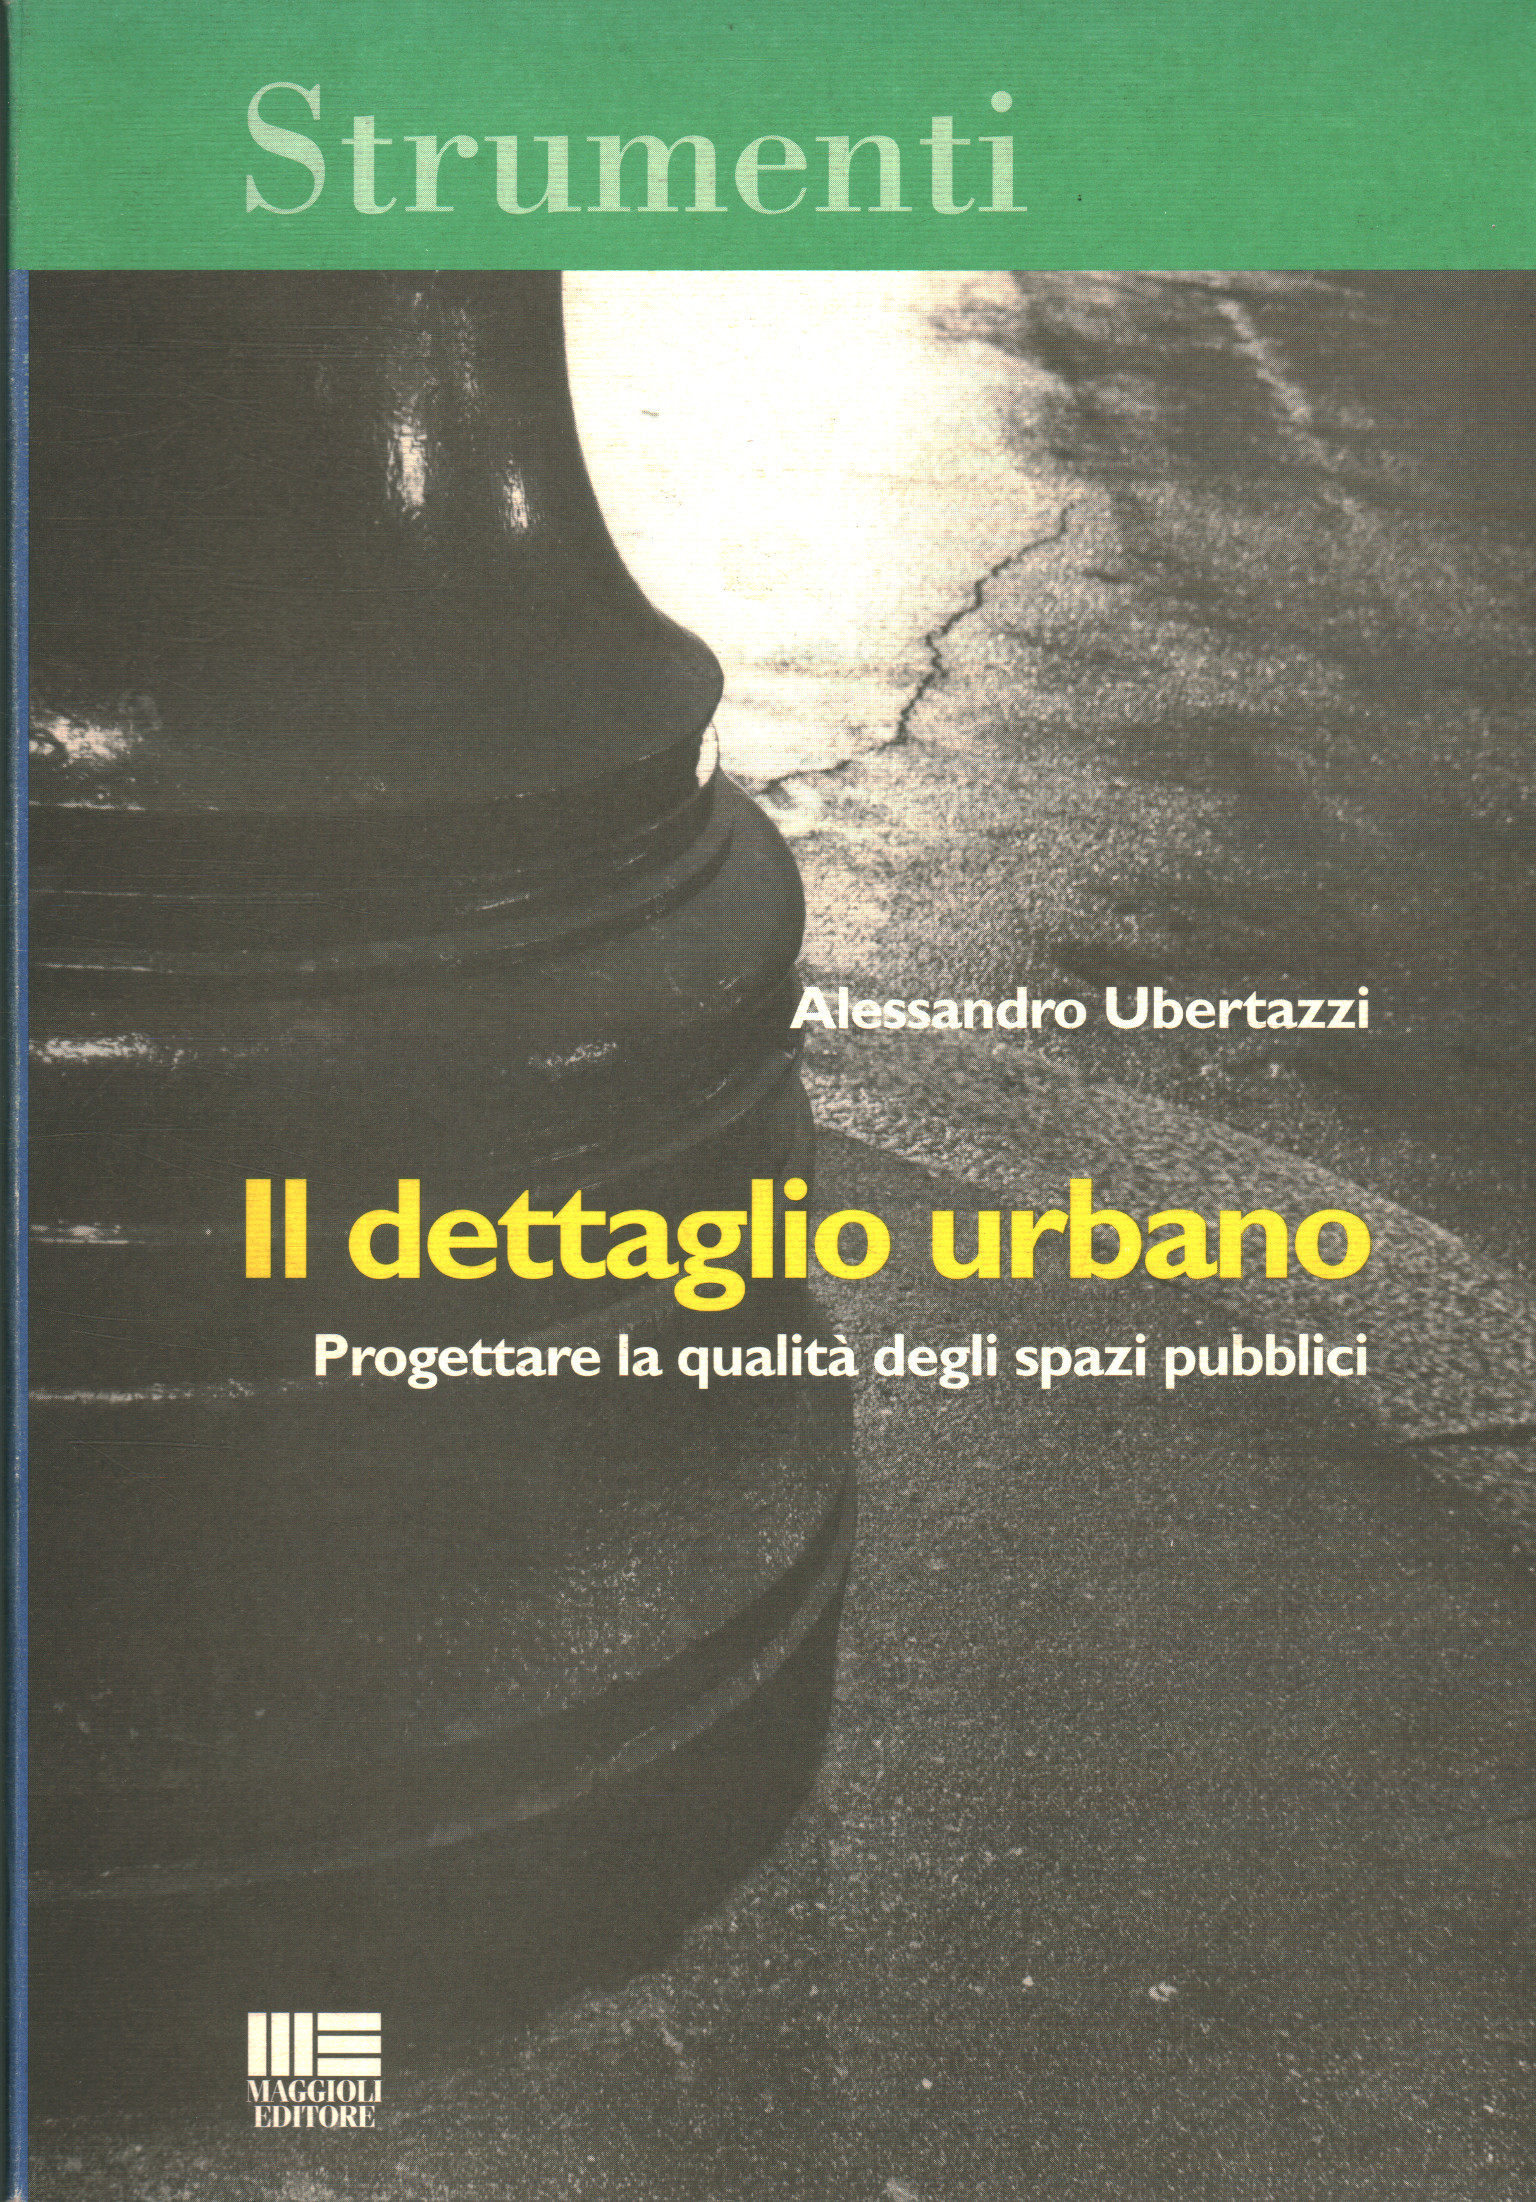 Il dettaglio urbano, Alessandro Ubertazzi